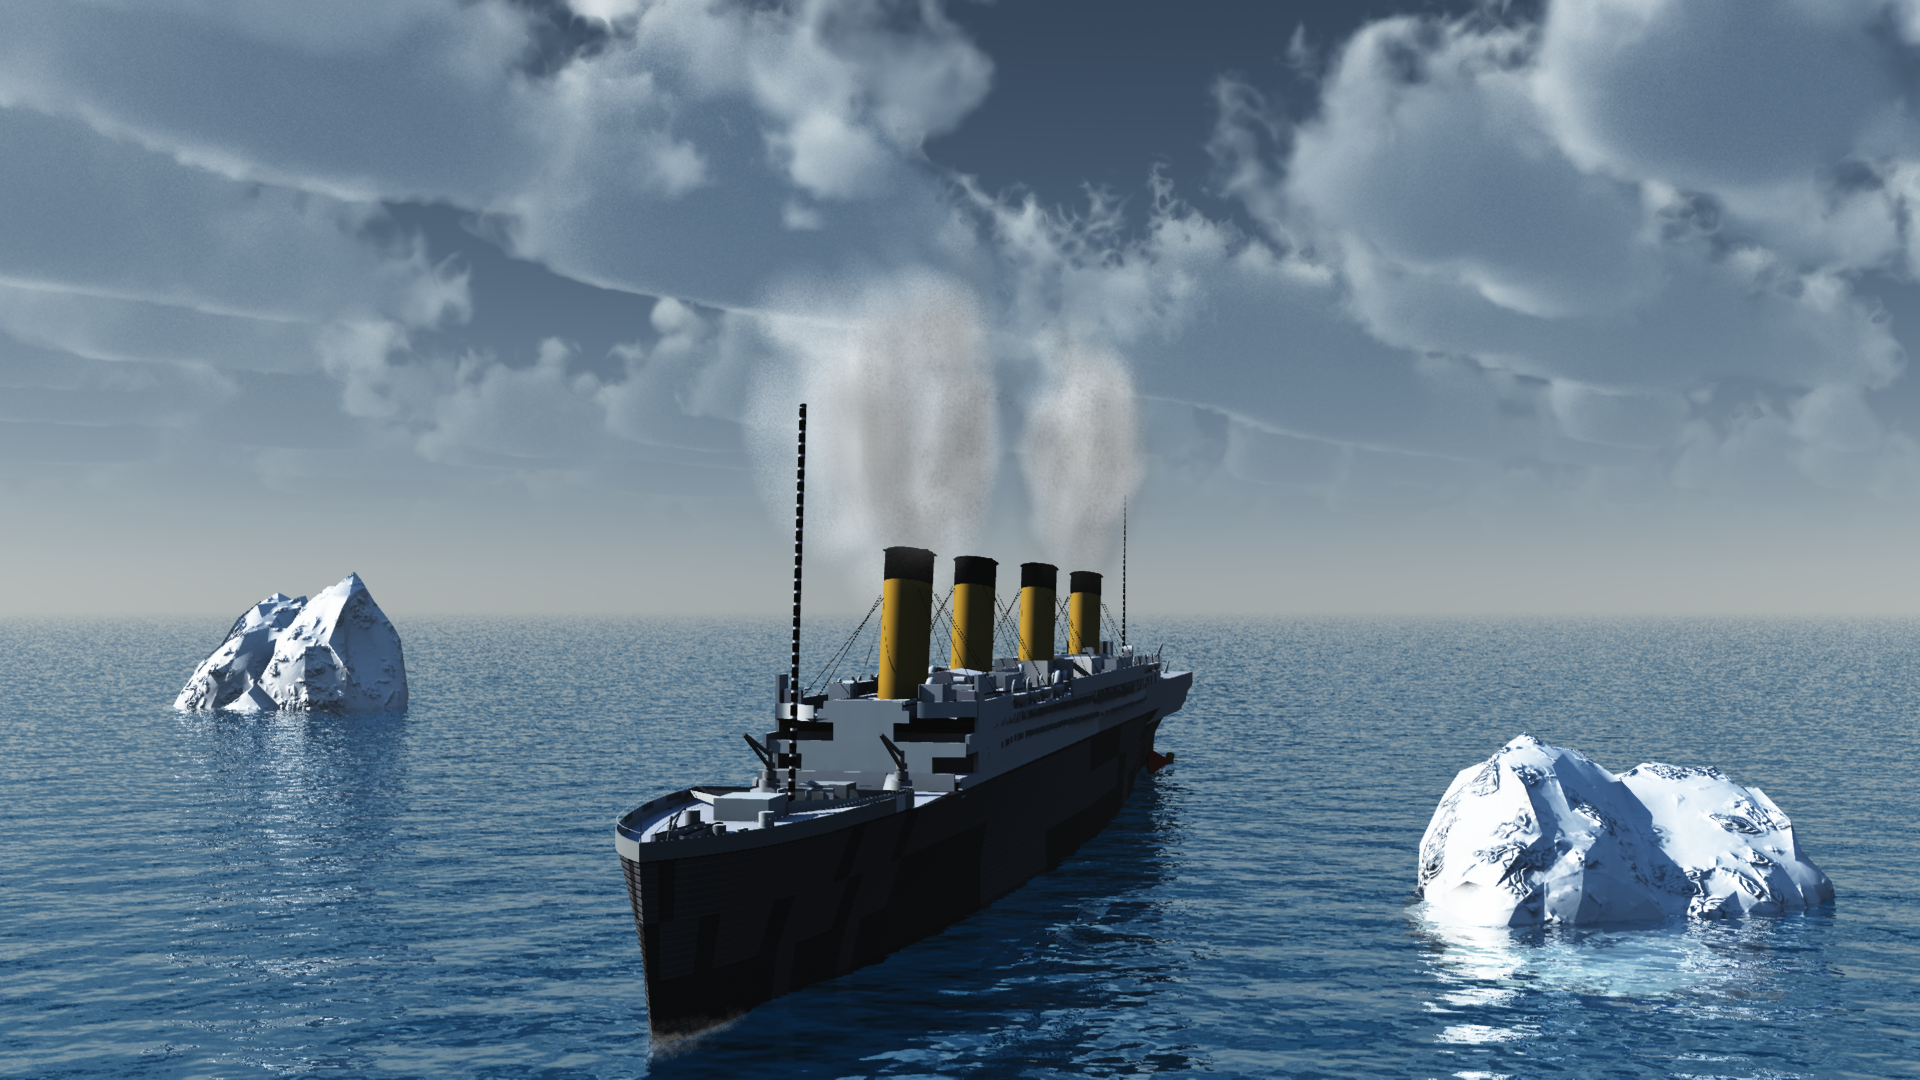 Titanic computergraphic2011